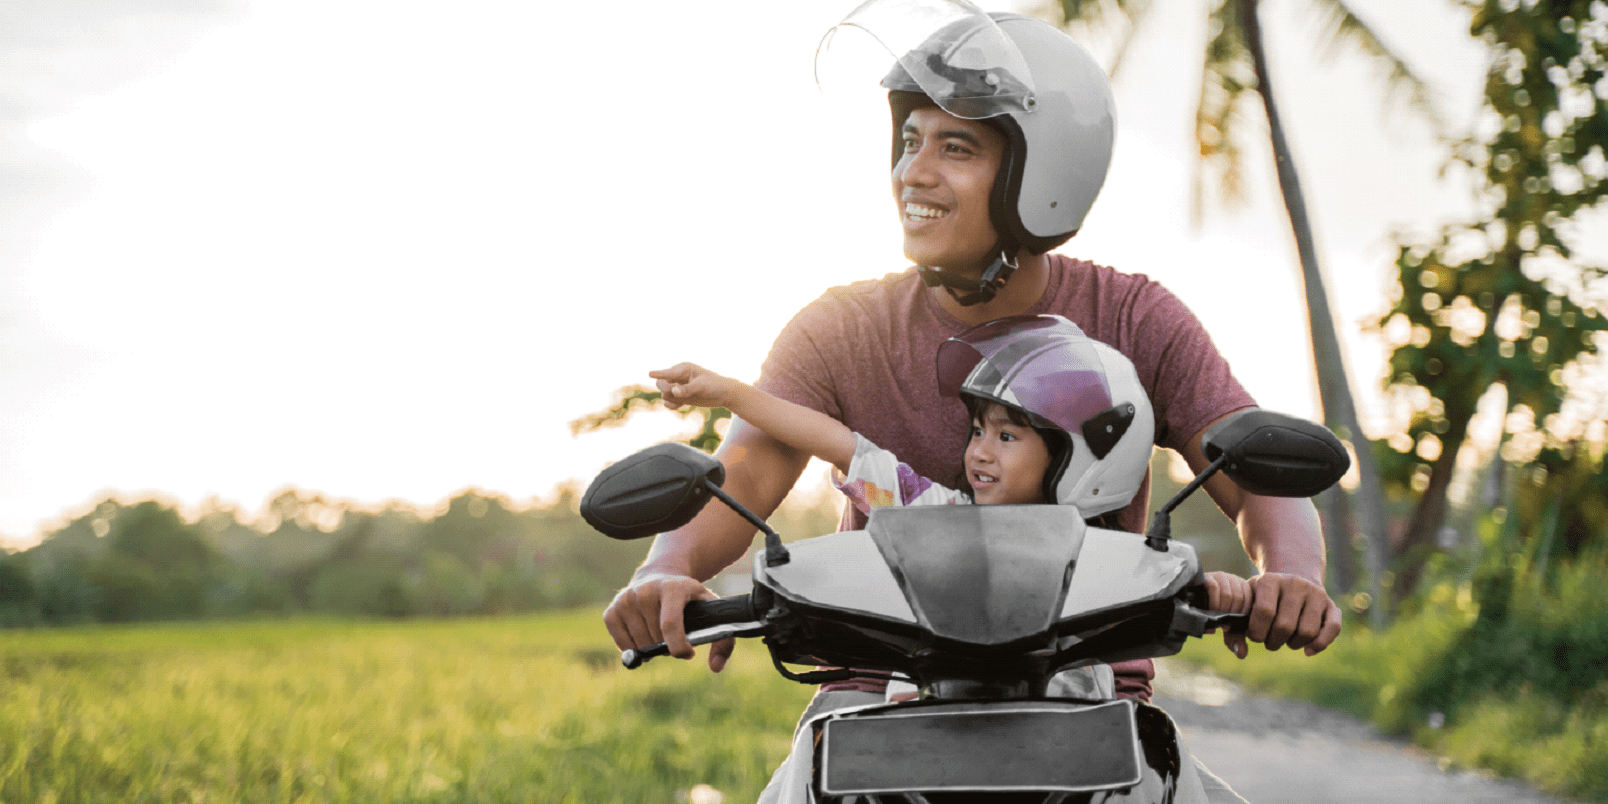 Transportar crianças menores de 10 anos em moto é imprudente e proibido  perante a lei.